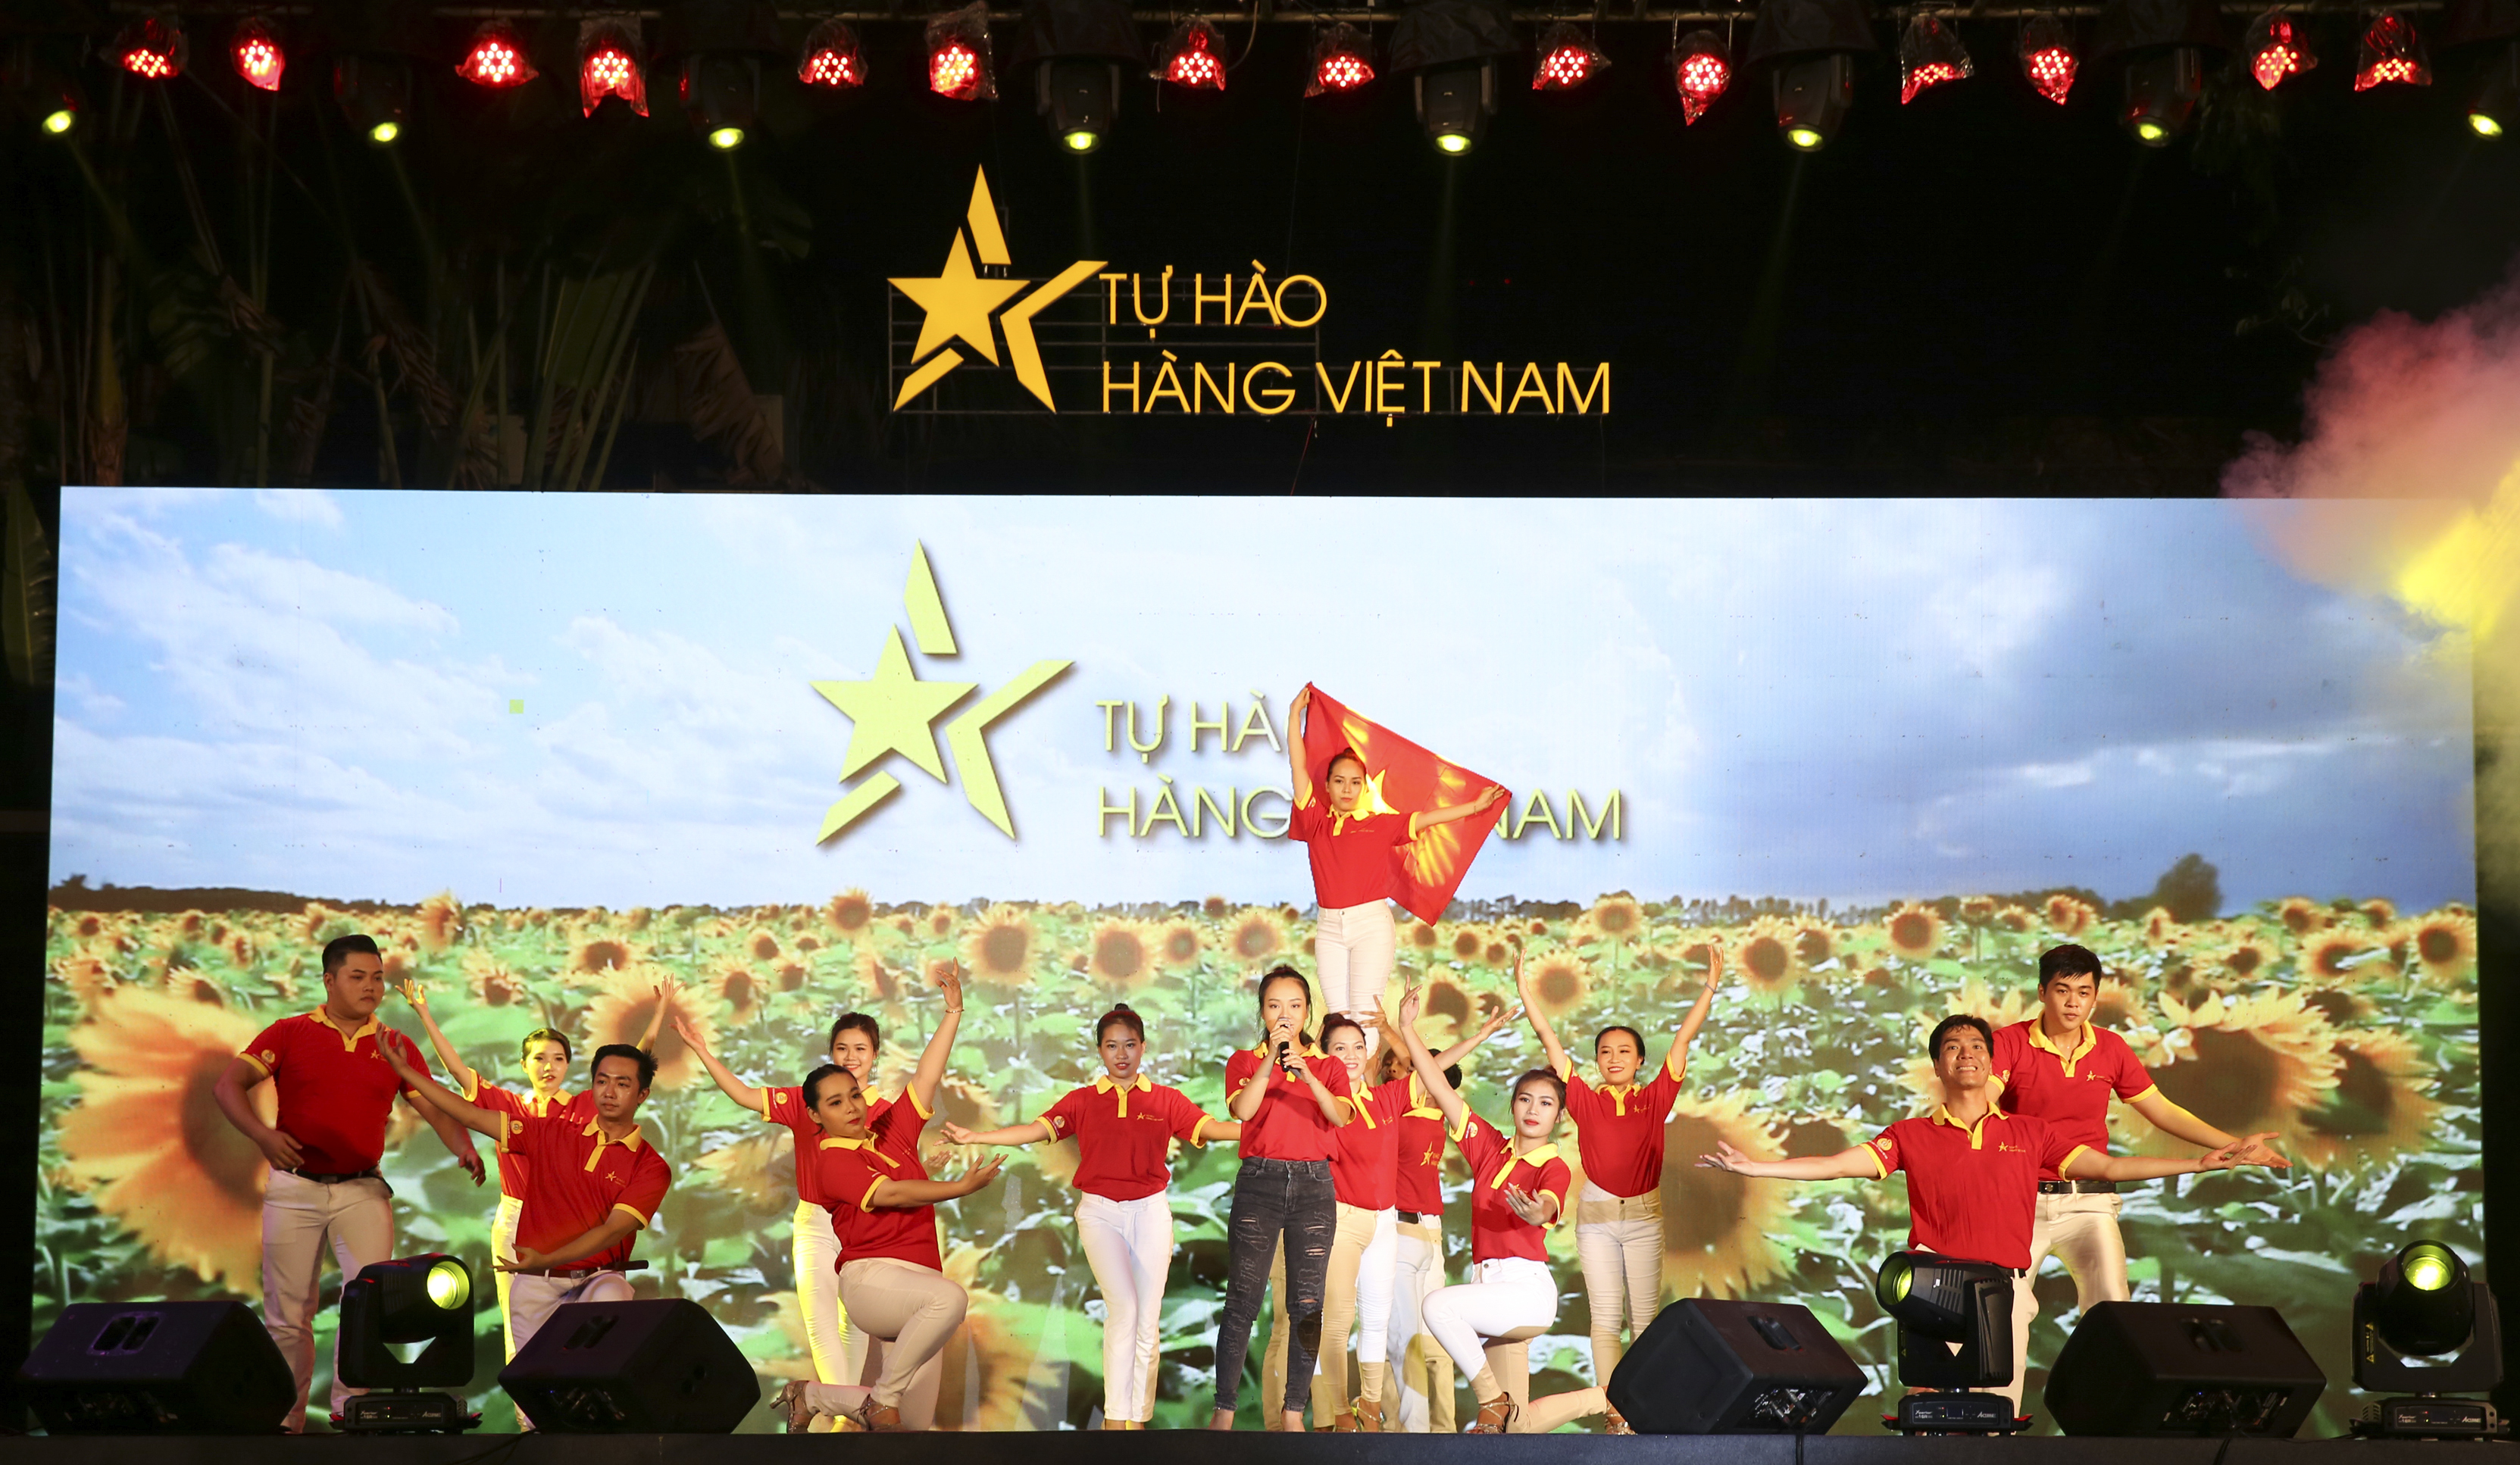 Tự hào hàng Việt